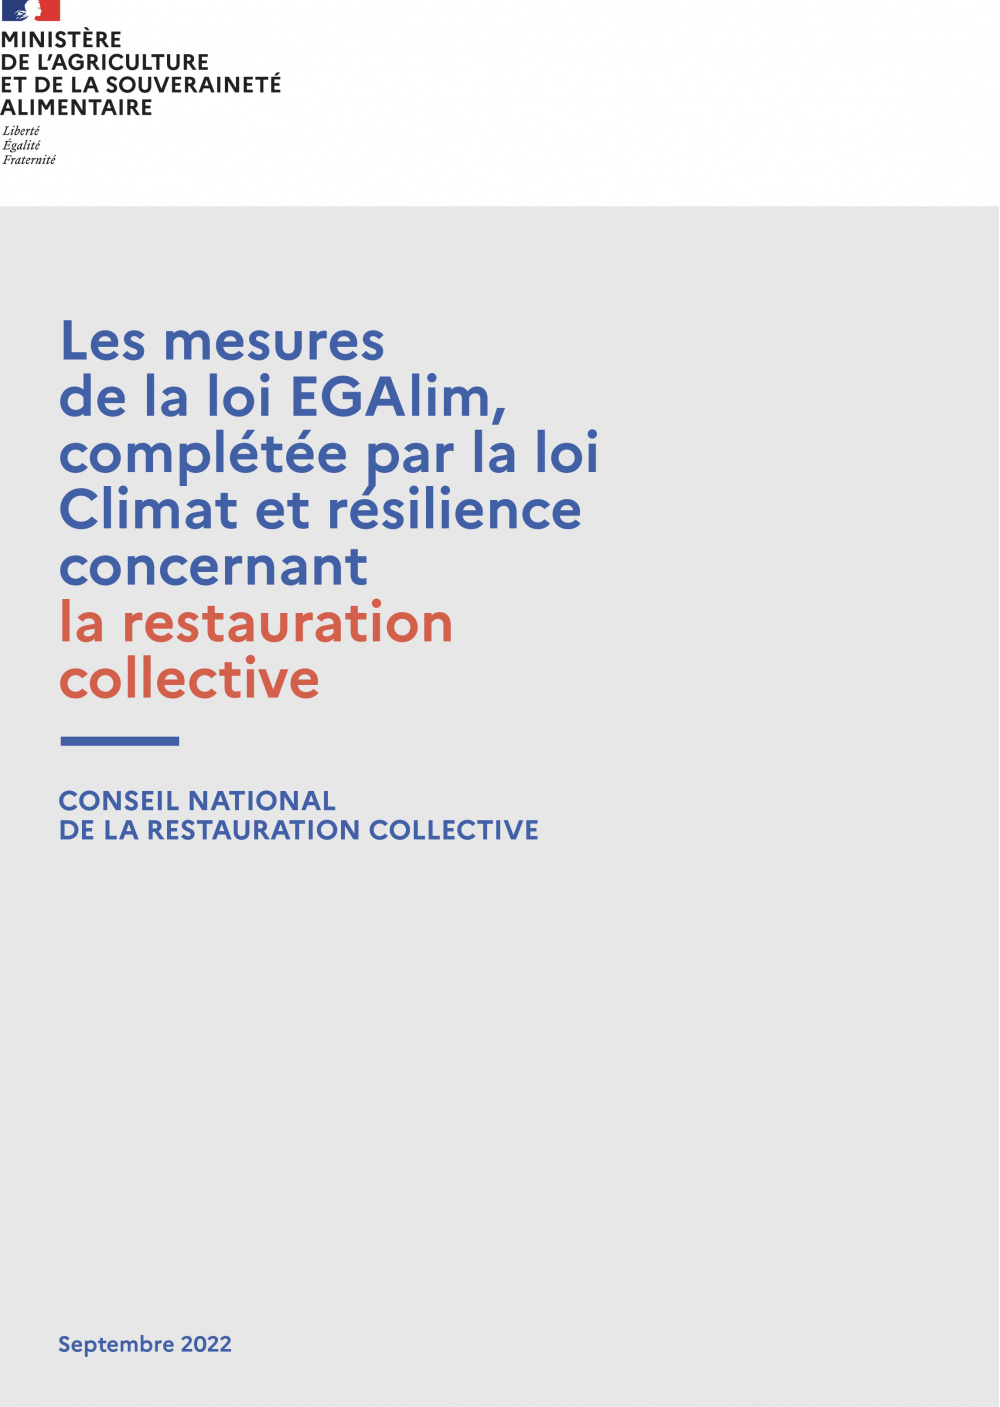 Les mesures de la loi EGAlim, complétée par la loi Climat et résilience concernant la restauration collective